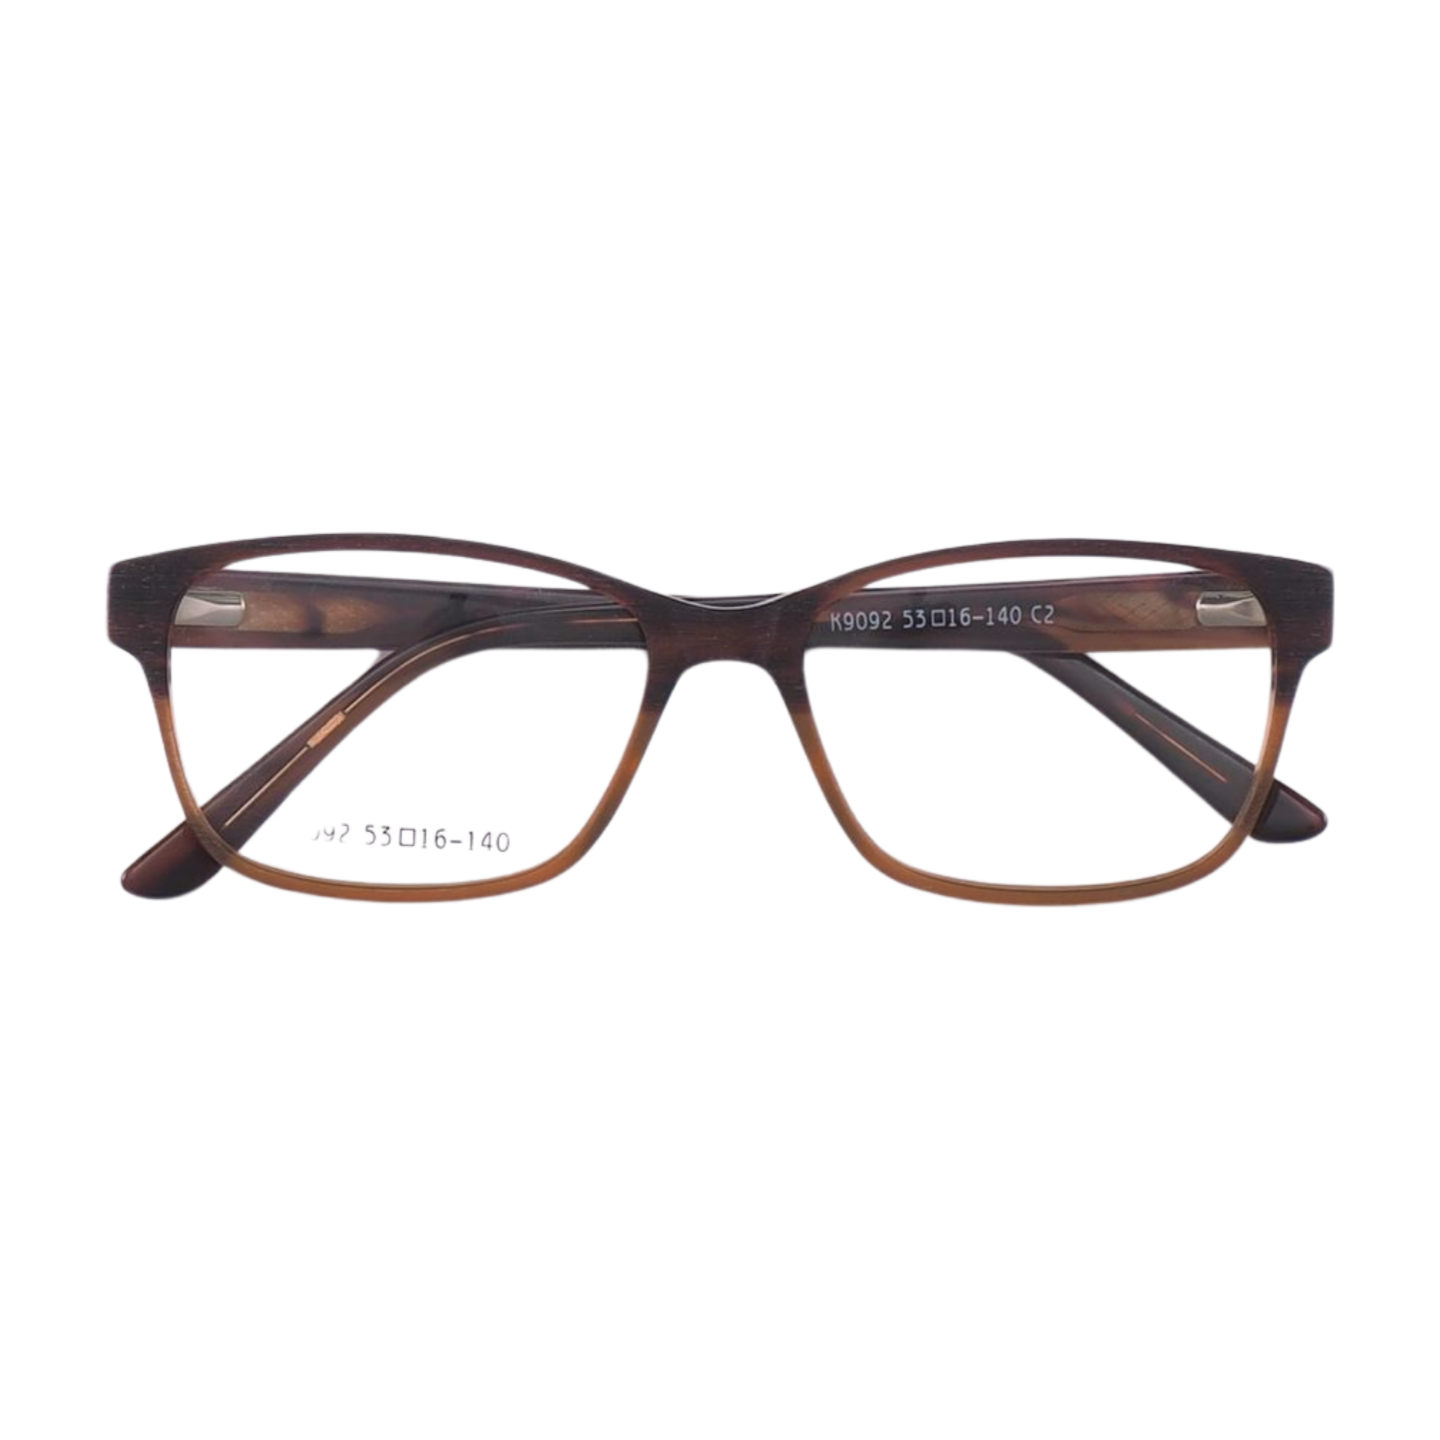 Wayfarer Full Rim Unisex Eyeglasses, Autumn Eyeglasses Front View Brown Color from VivGlasses